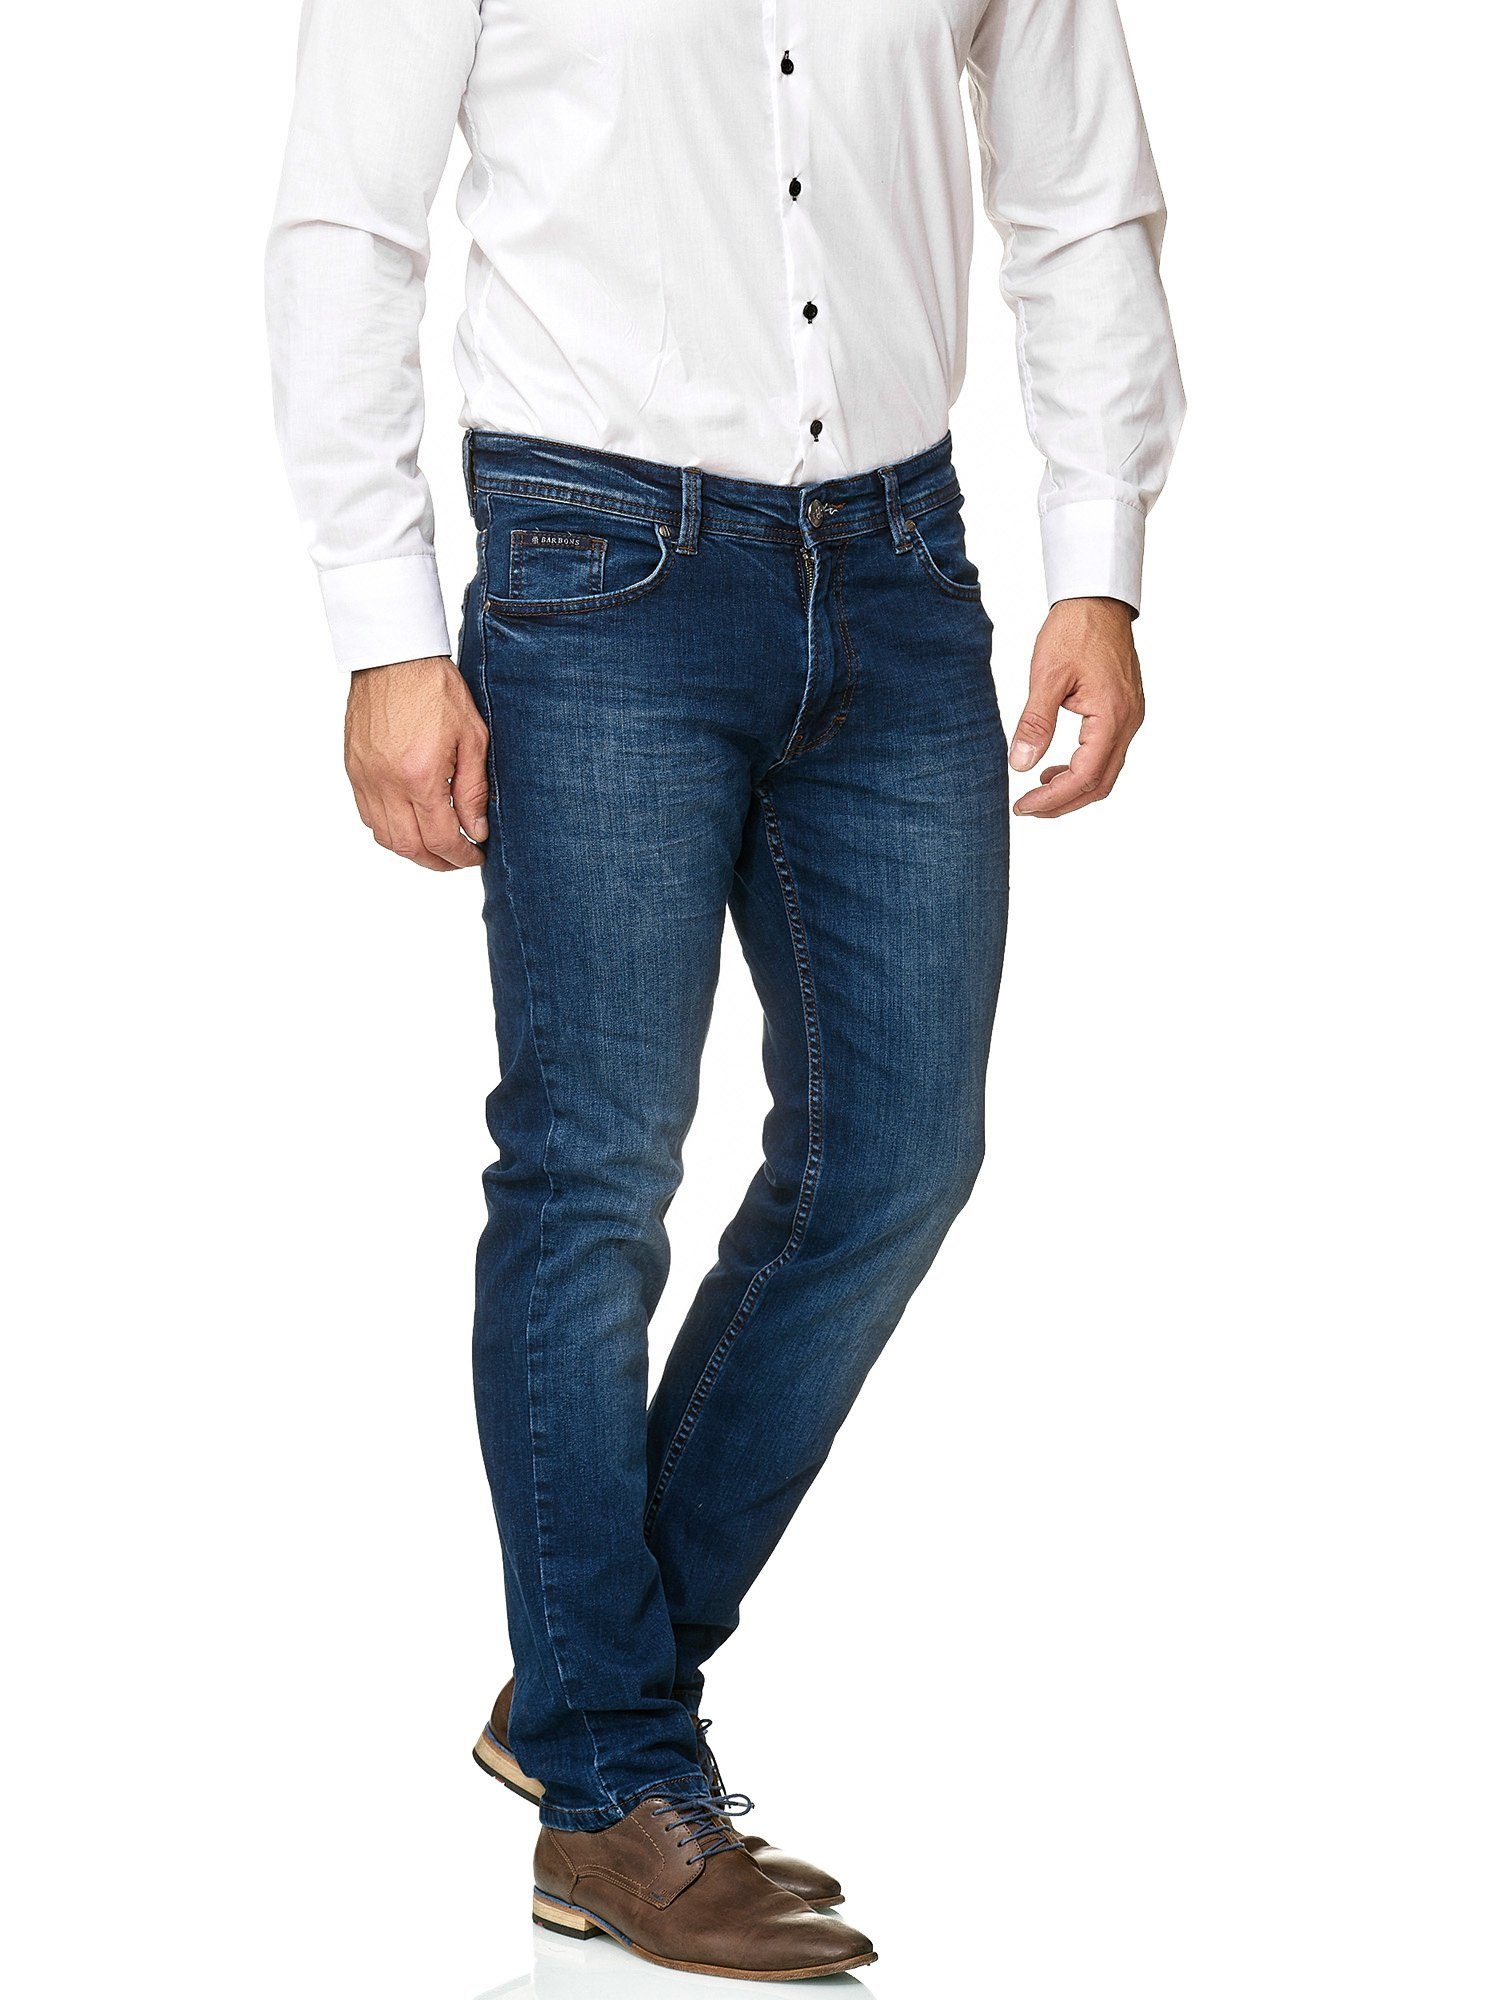 BARBONS 5-Pocket-Jeans Herren Fit Regular 5-Pocket 02-Blau Design